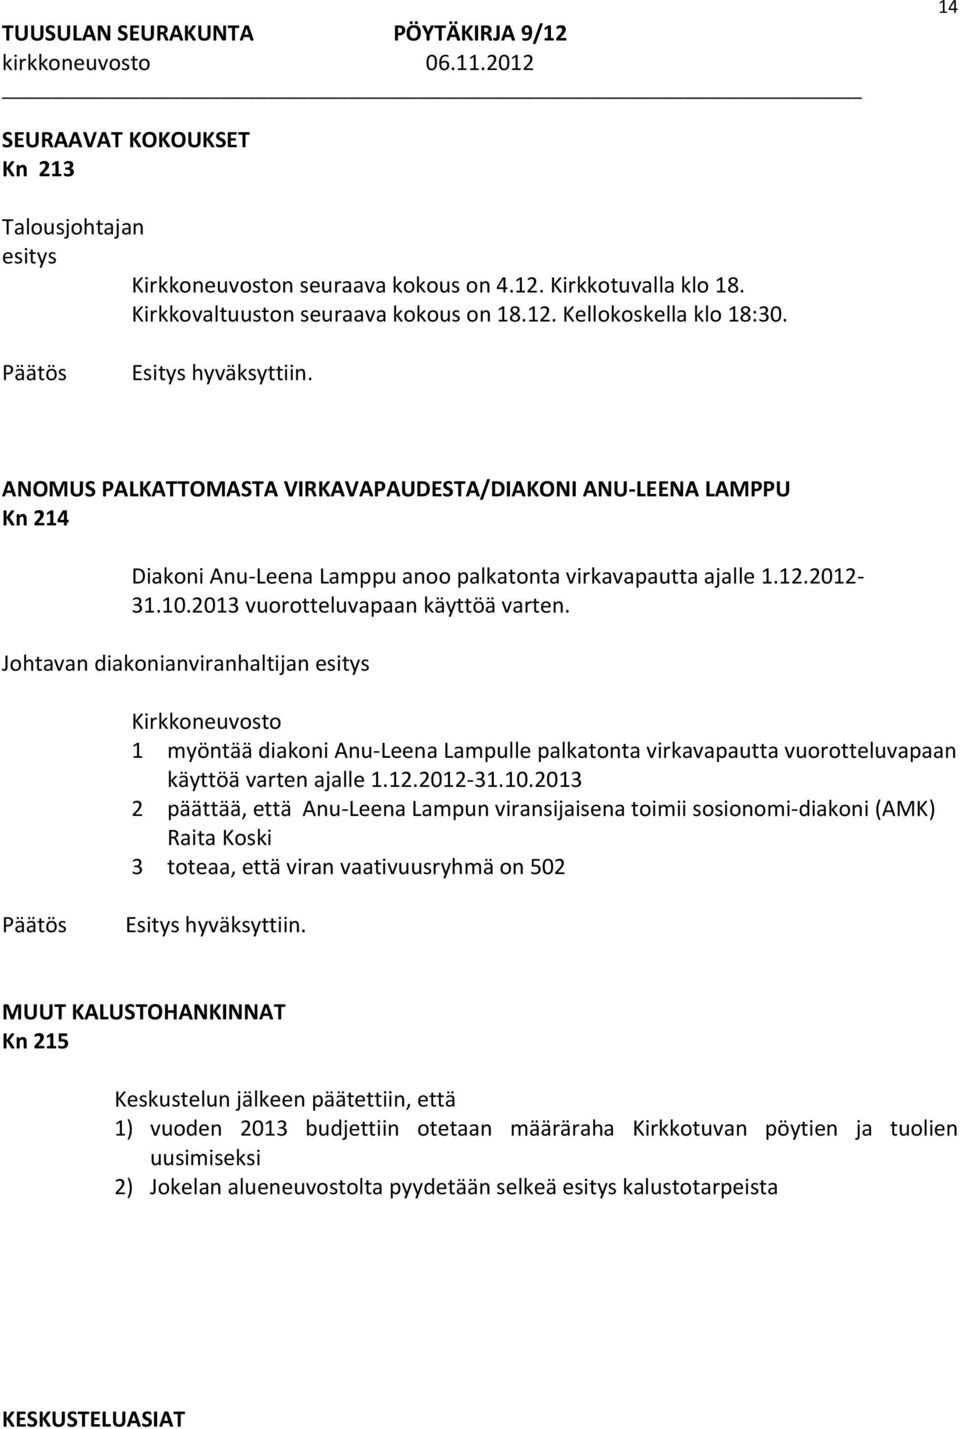 Johtavan diakonianviranhaltijan Kirkkoneuvosto 1 myöntää diakoni Anu Leena Lampulle palkatonta virkavapautta vuorotteluvapaan käyttöä varten ajalle 1.12.2012 31.10.